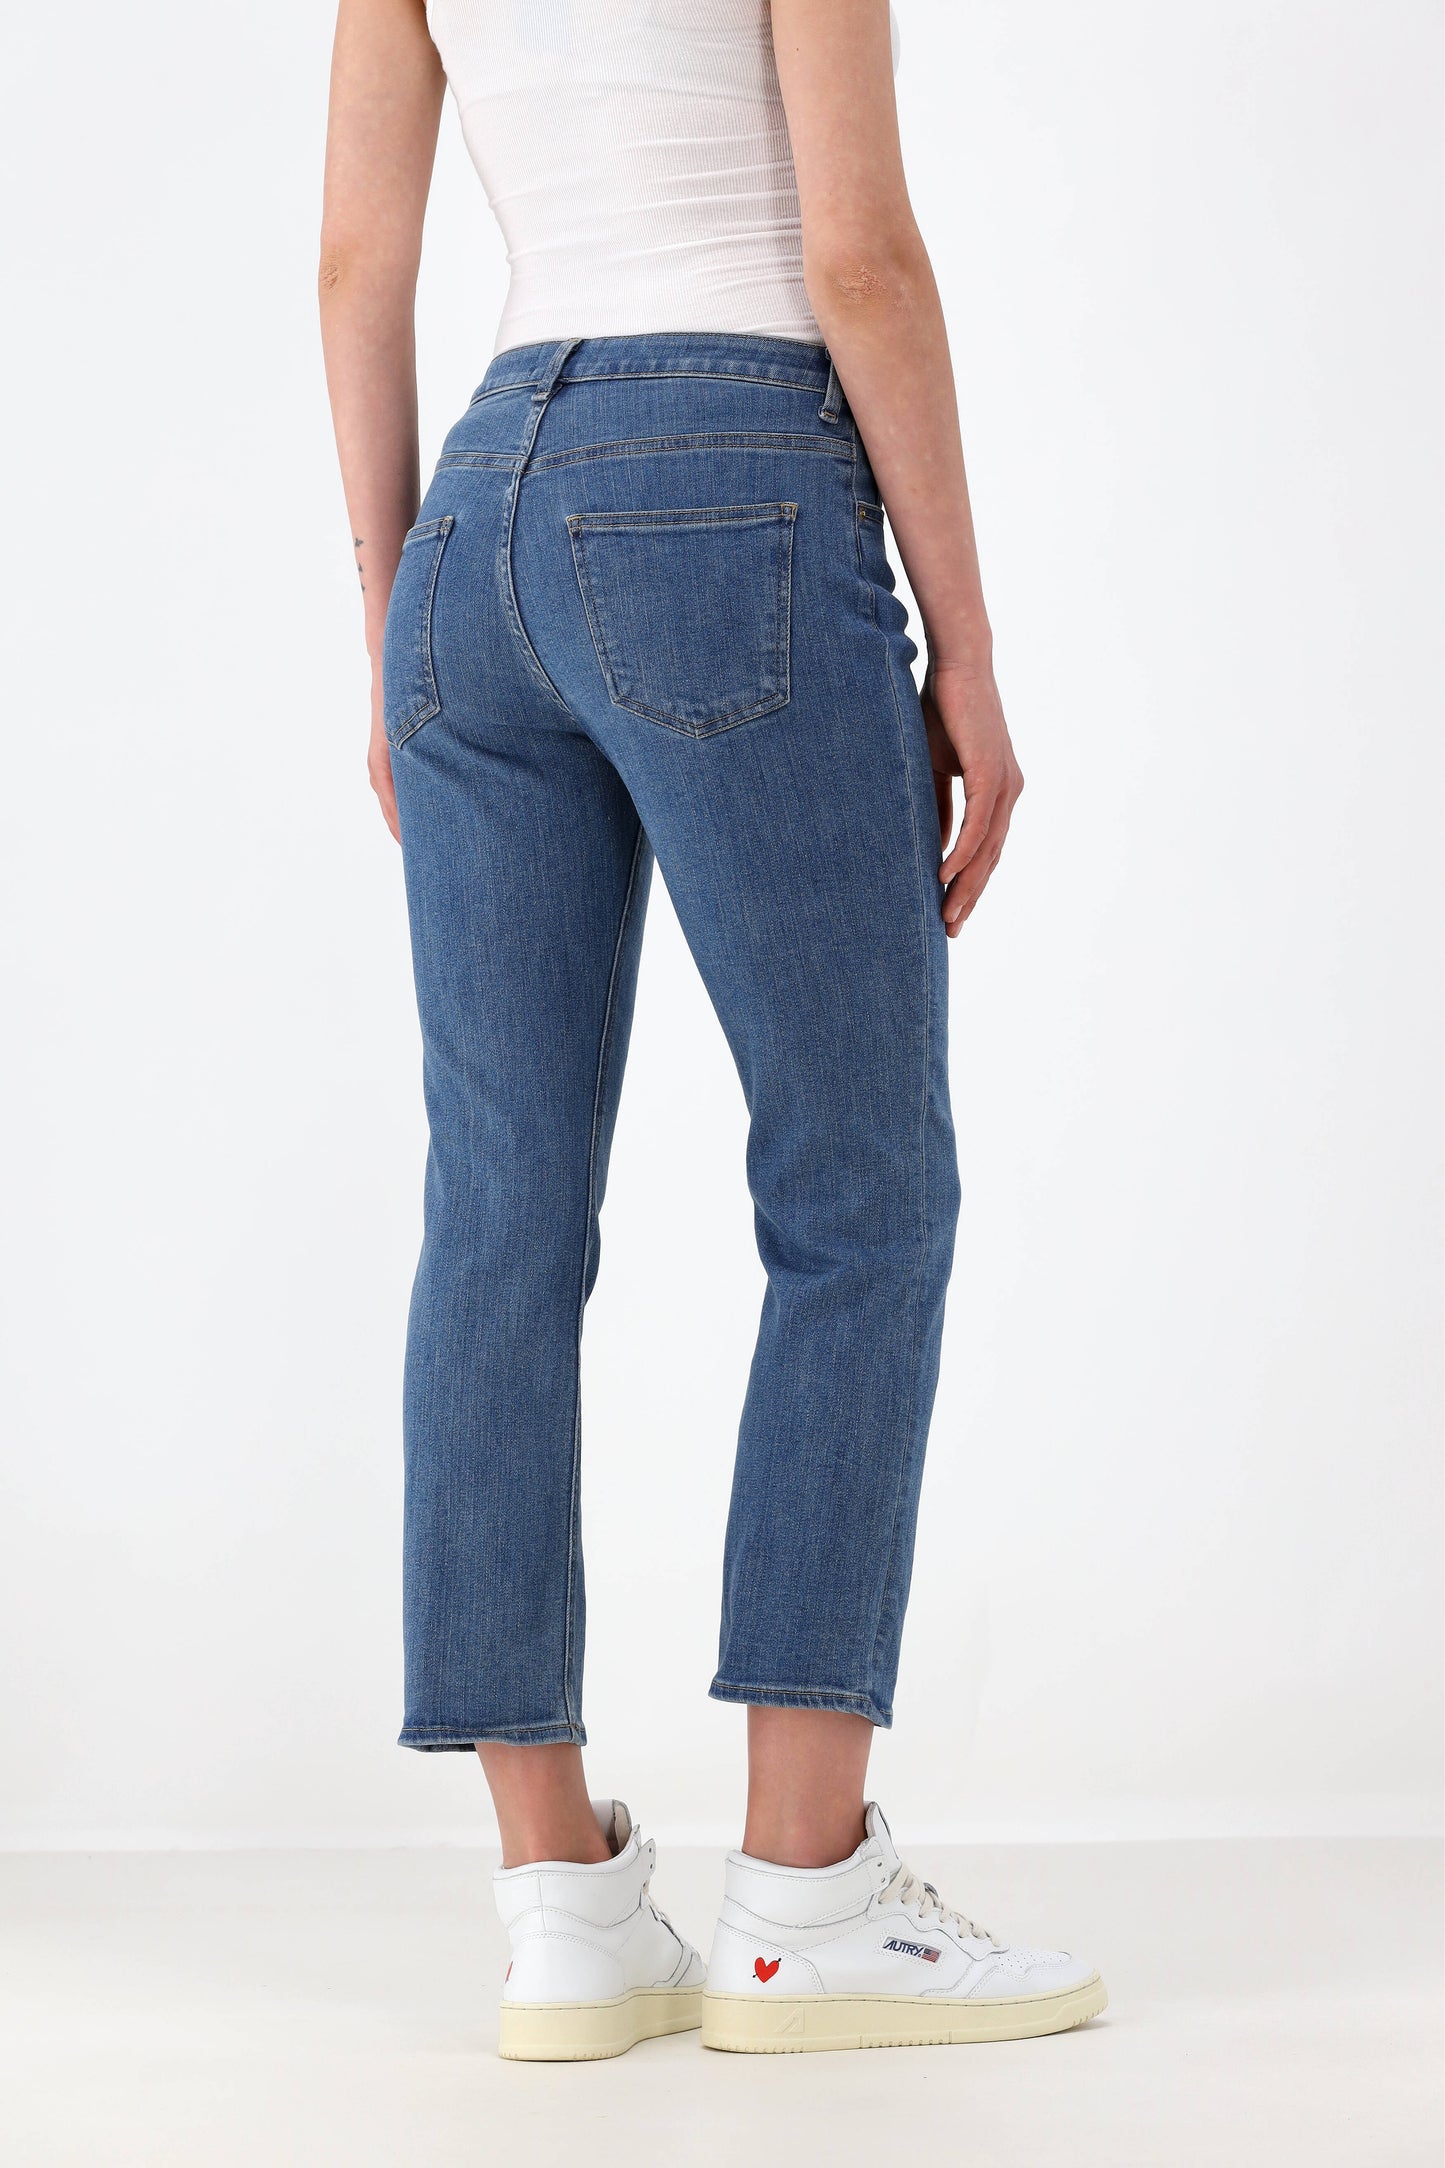 Jeans The Rose Quartz Solid in 3 YearTu Es Mon Tresor - Anita Hass